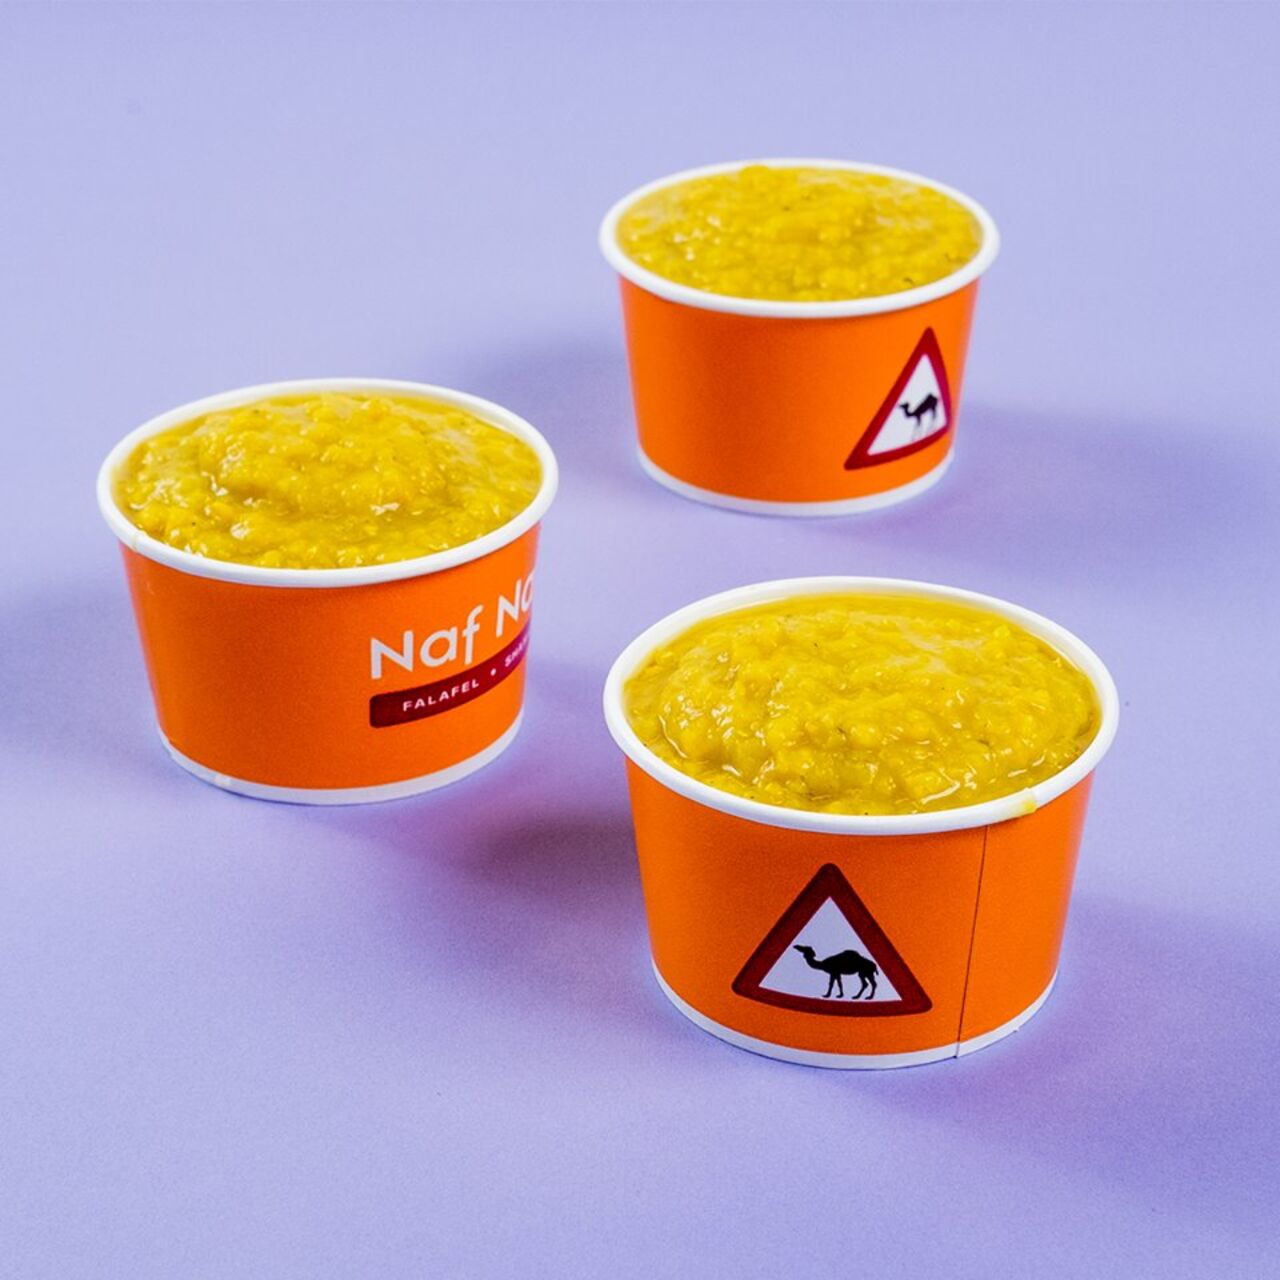 A photo of Naf Naf Grill